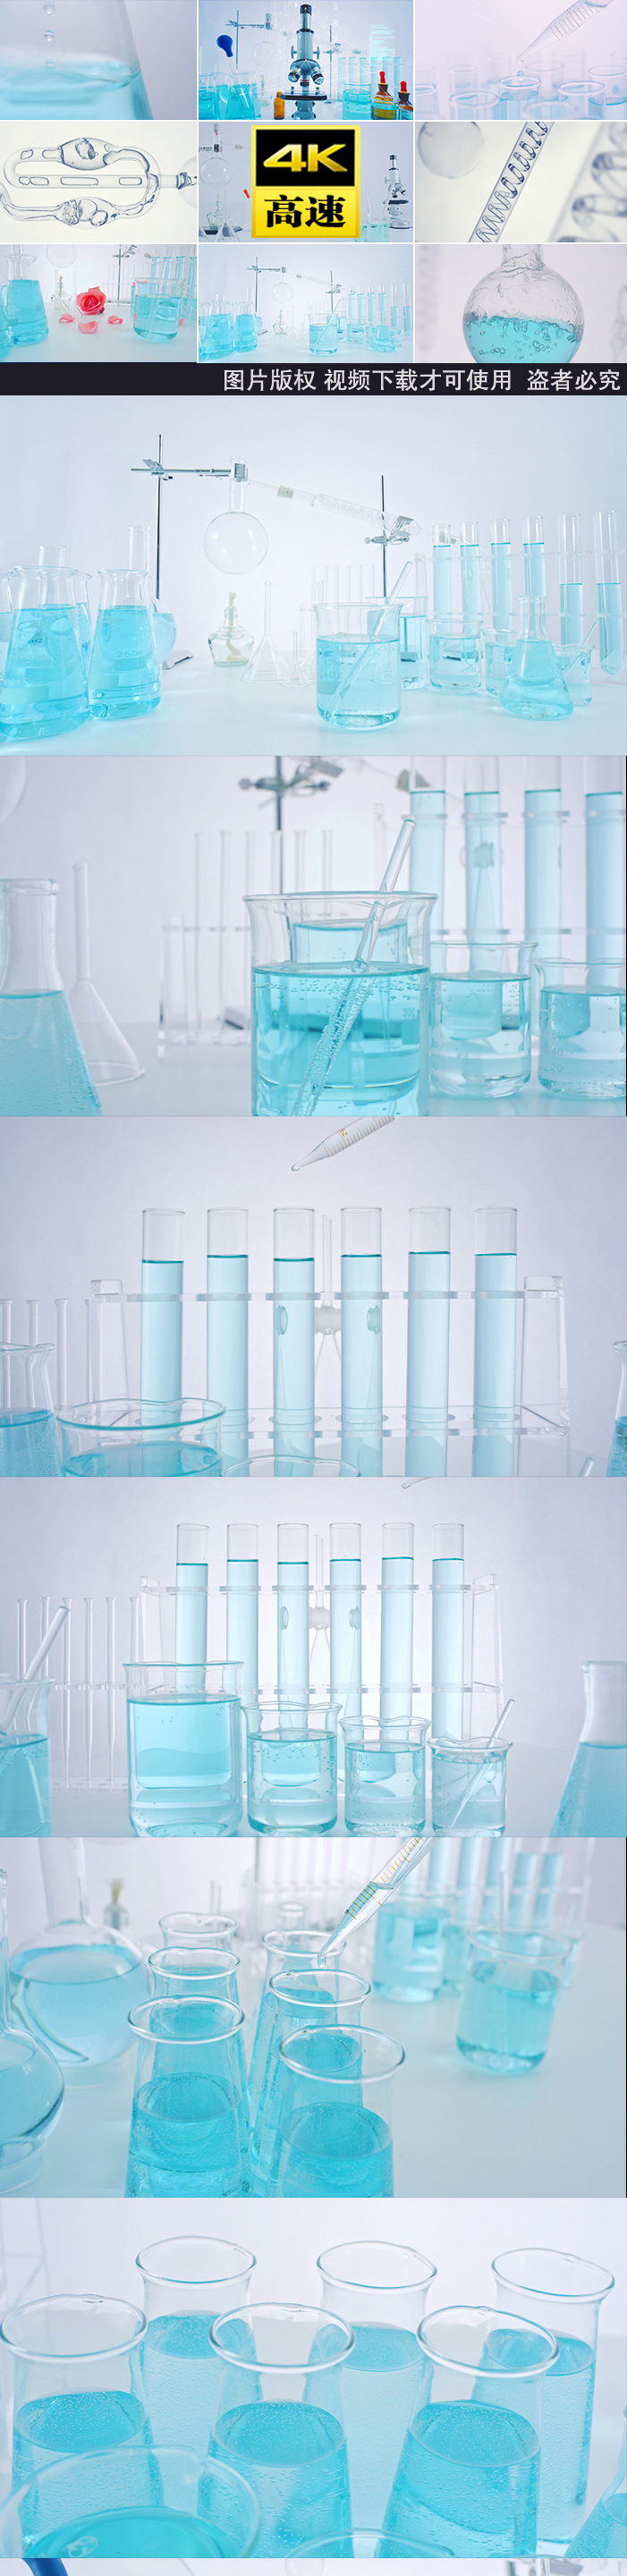 实验室实验导管化学提取试管生物显微镜滴管